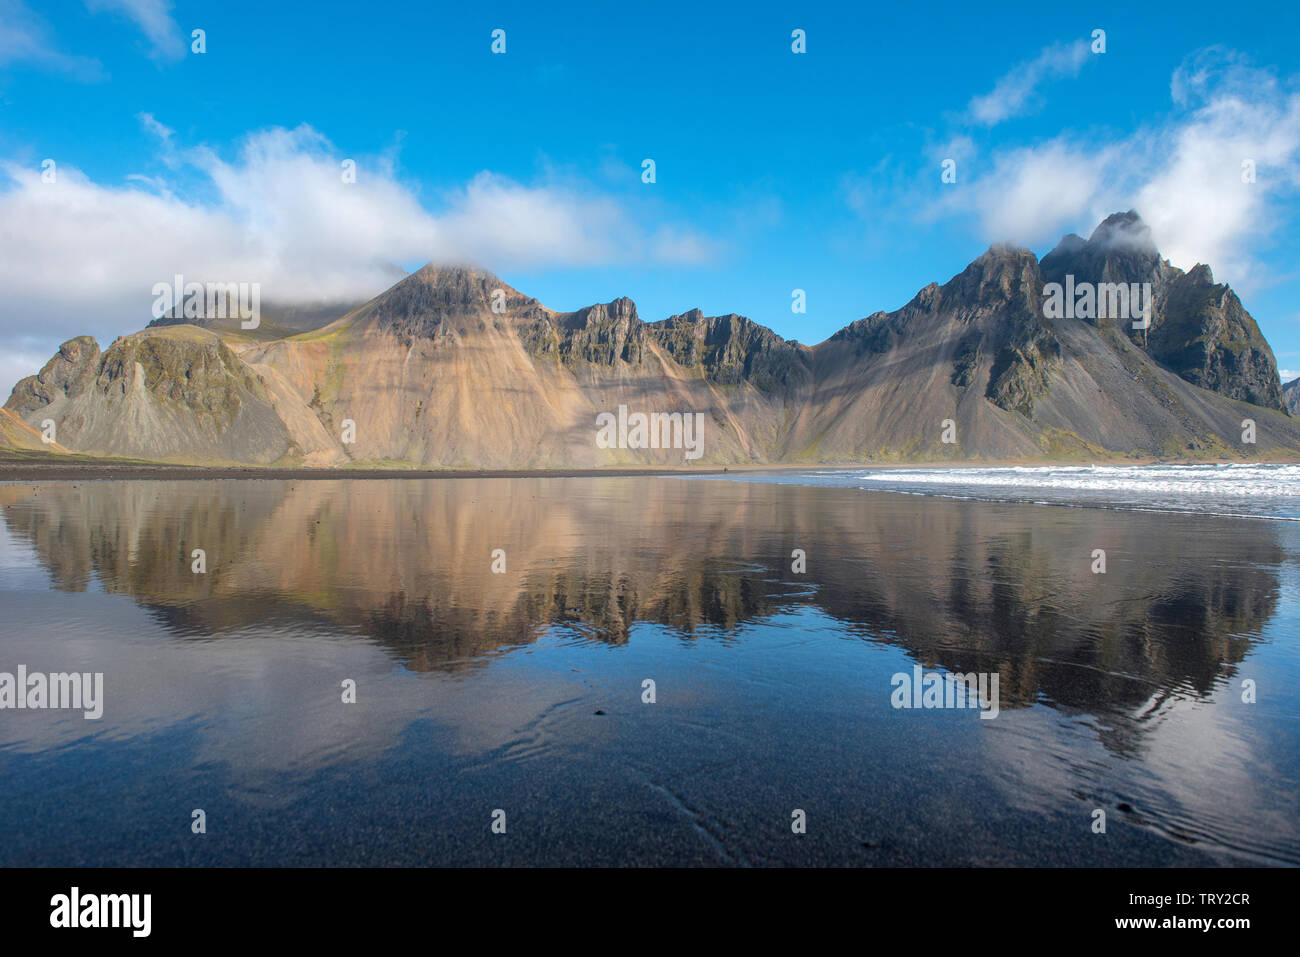 Paysage islandais, reflet de la montagne Vestrahorn dans les eaux de l'océan Atlantique. Péninsule de Stokksnes, Hofn, Islande Banque D'Images